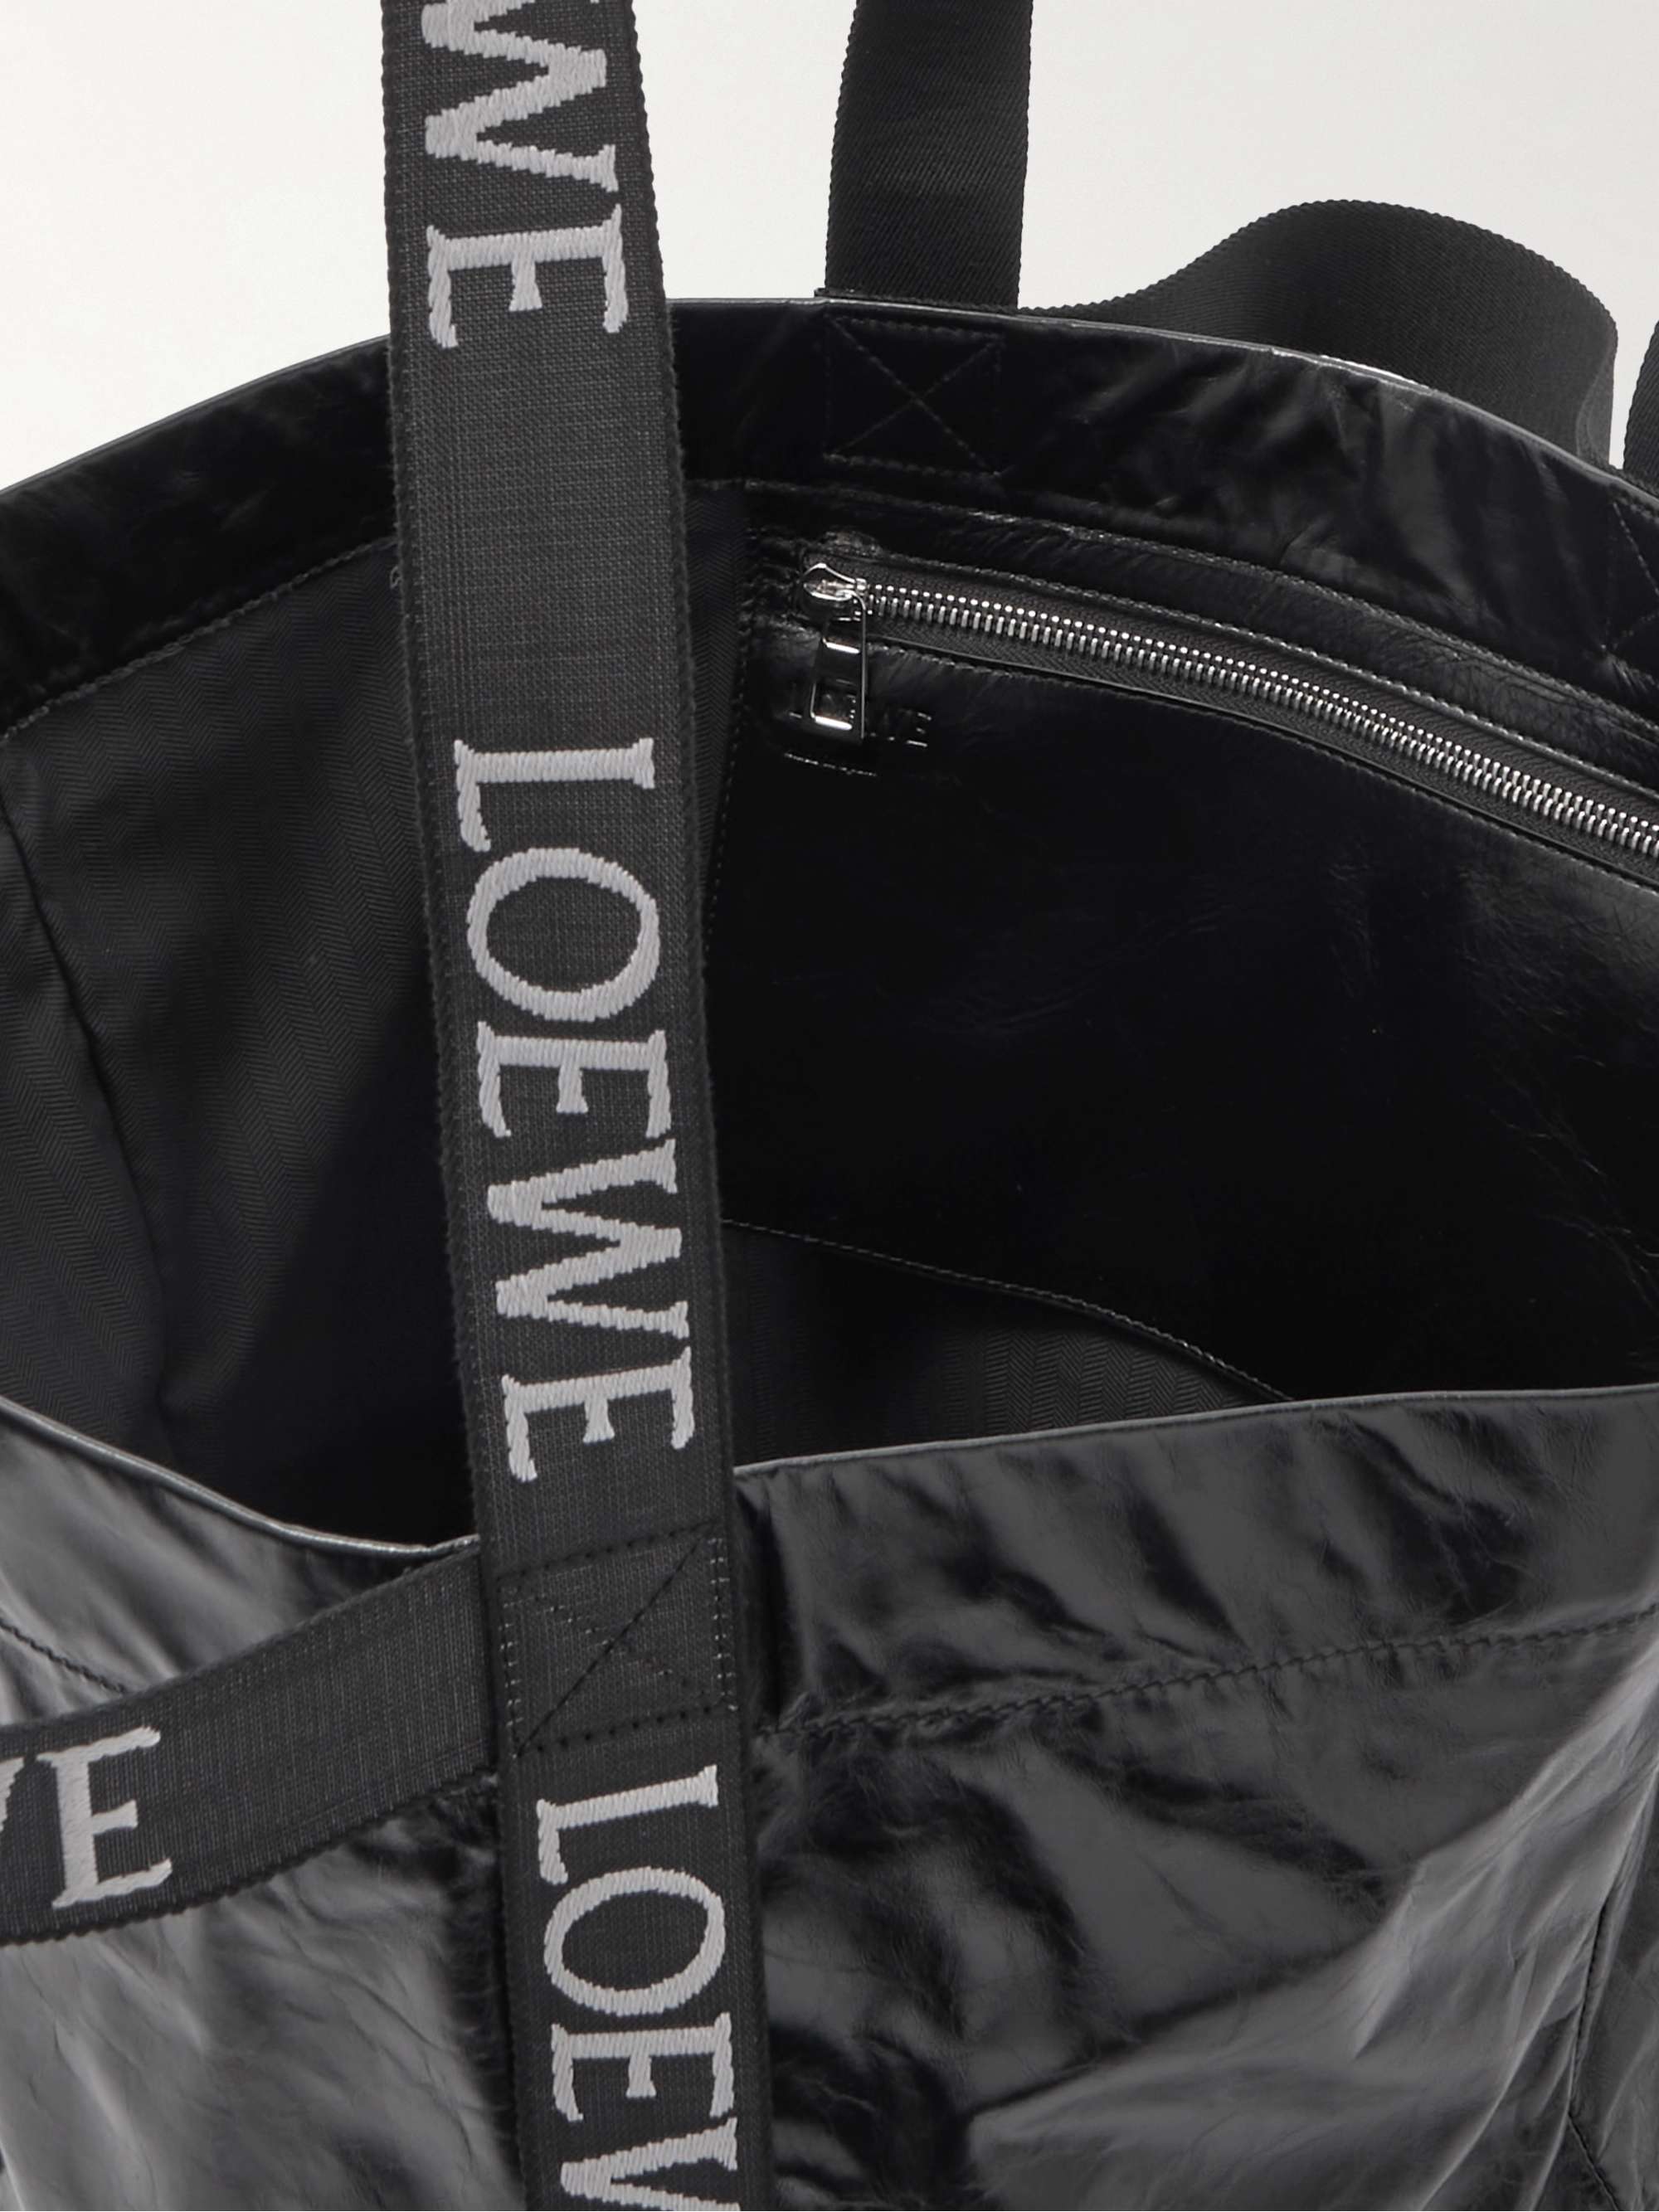 LOEWE Distressed Leather Tote Bag